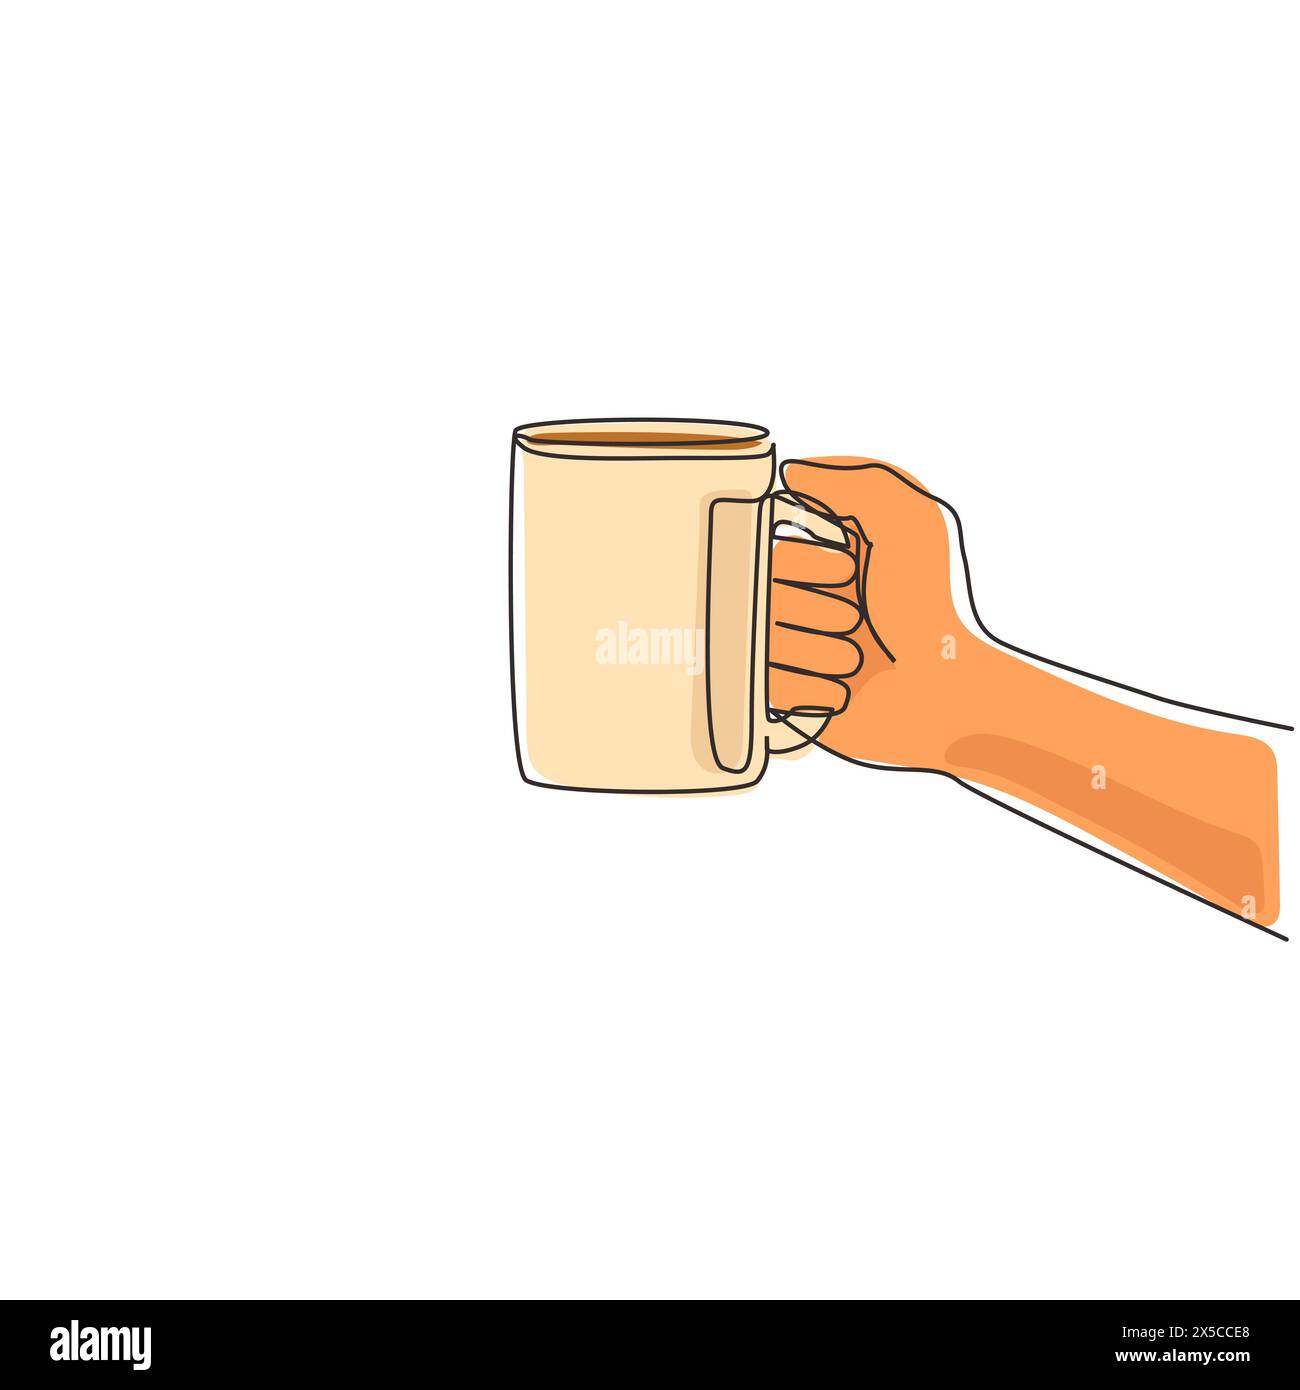 Die menschliche Hand hält eine Keramikschale mit Kaffee oder Tee. Die Hand hält einen heißen Becher am Griff. Entspannen Sie sich morgens. Fortlaufend Stock Vektor